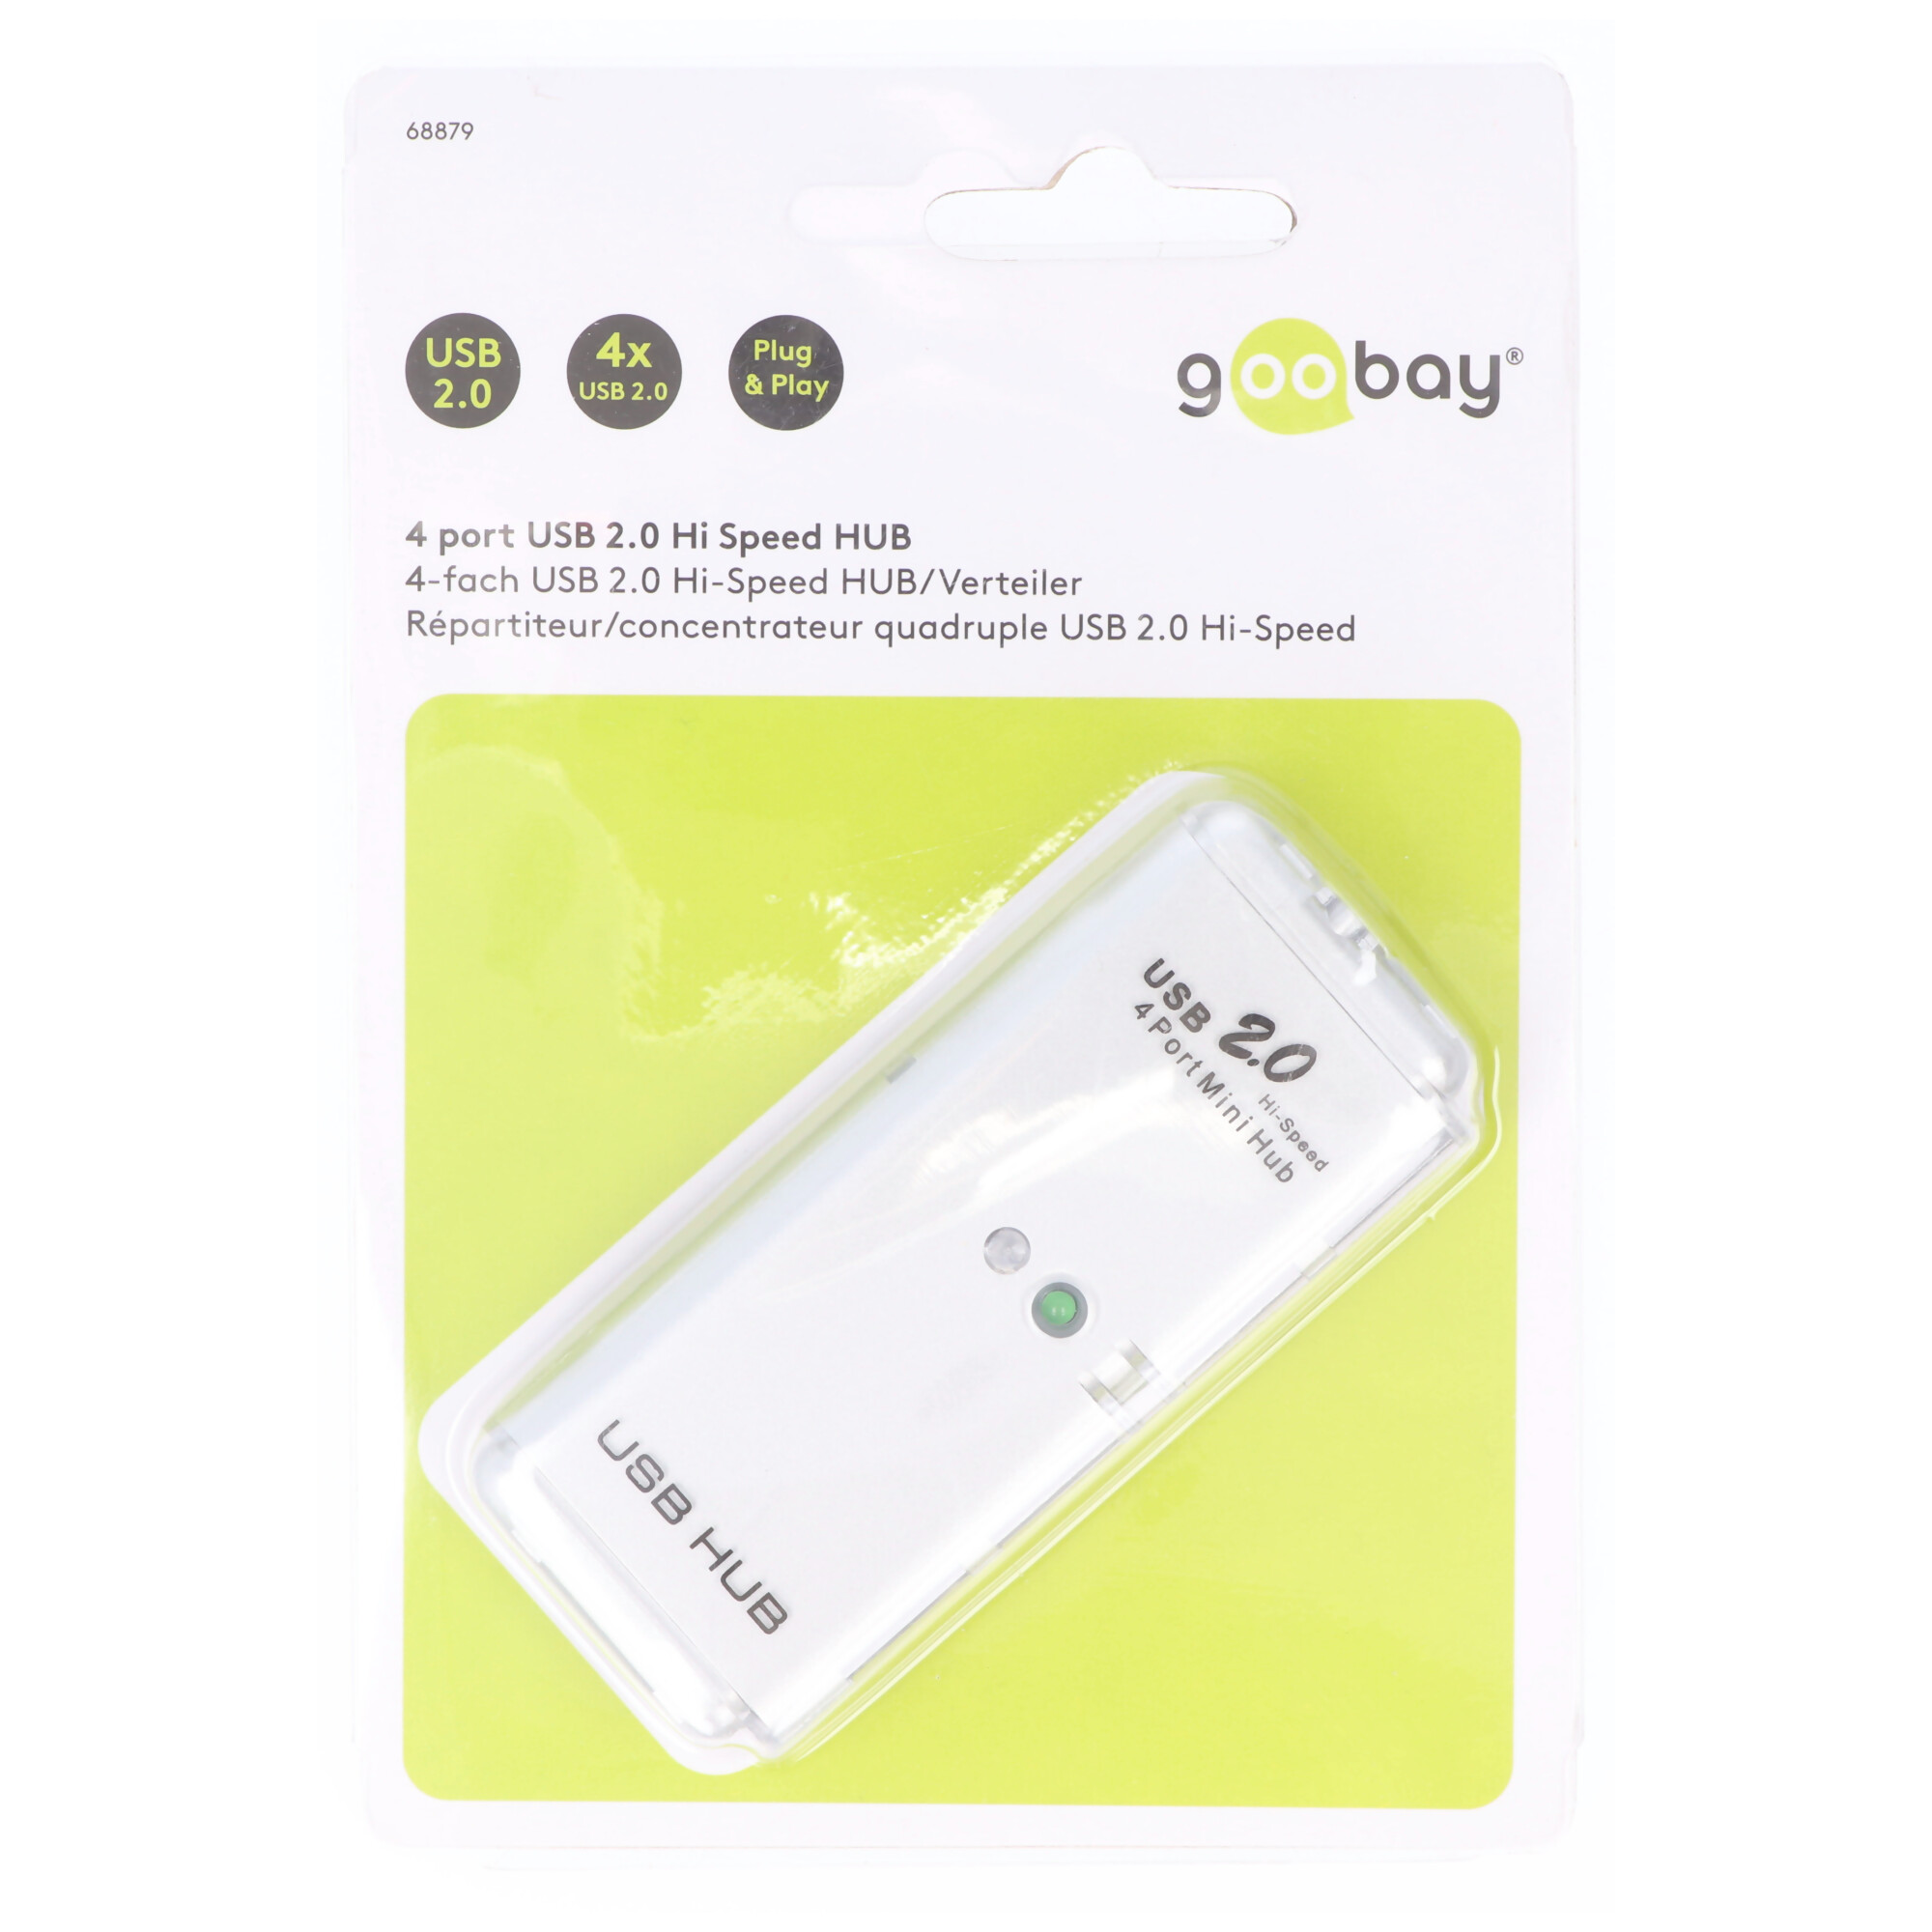 Goobay 4-fach USB 2.0 Hi-Speed HUB/Verteiler - zum Verbinden von bis zu 4 USB-Geräten mit einem USB-Anschluss